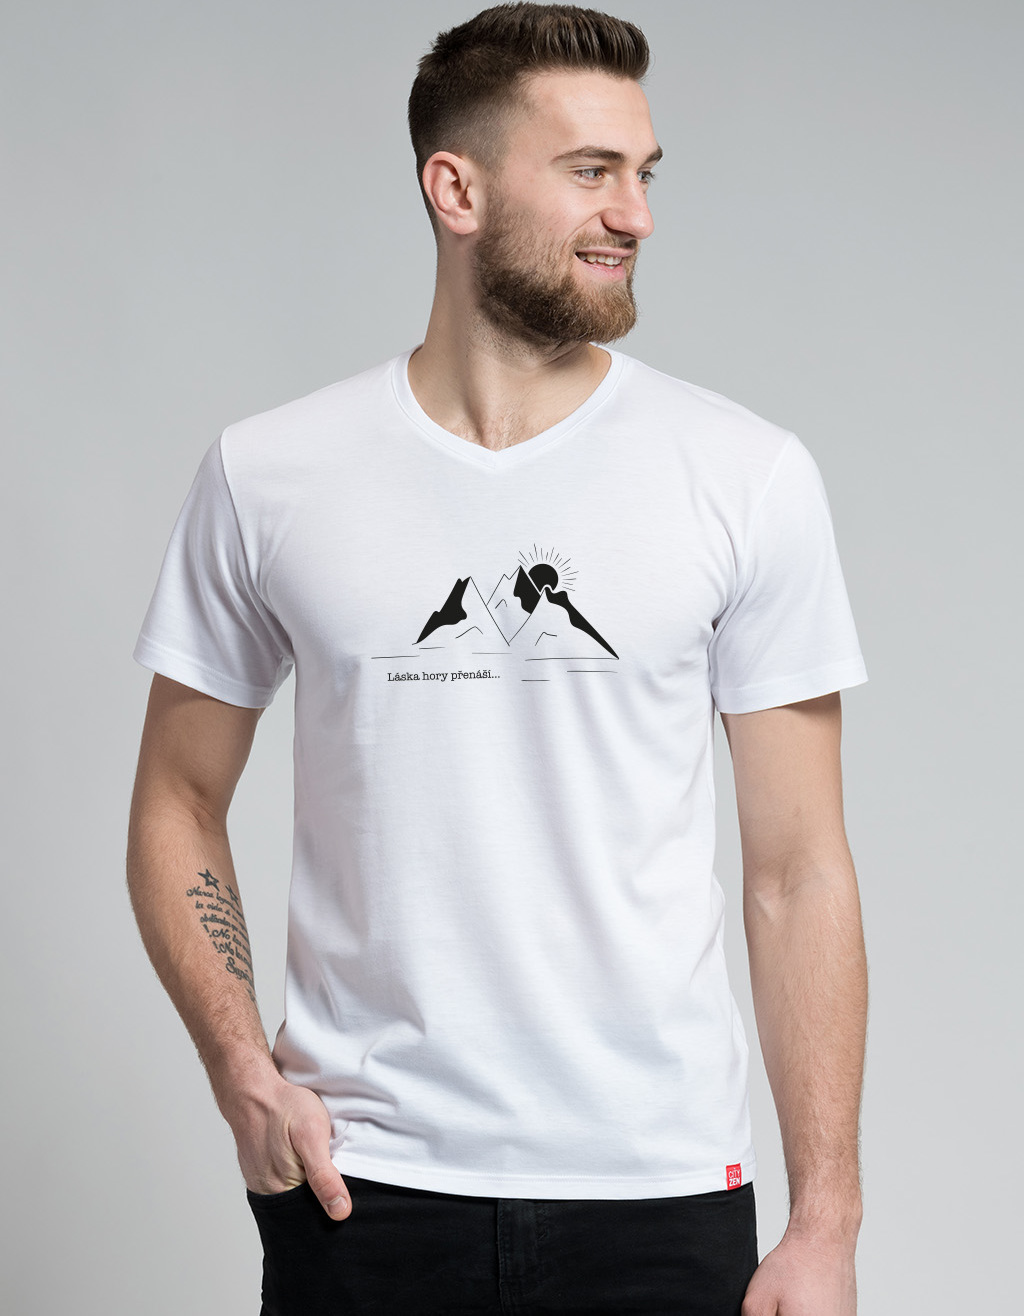 Pánské bavlněné tričko CITYZEN bílé Láska hory přenáší Velikost: 5XL